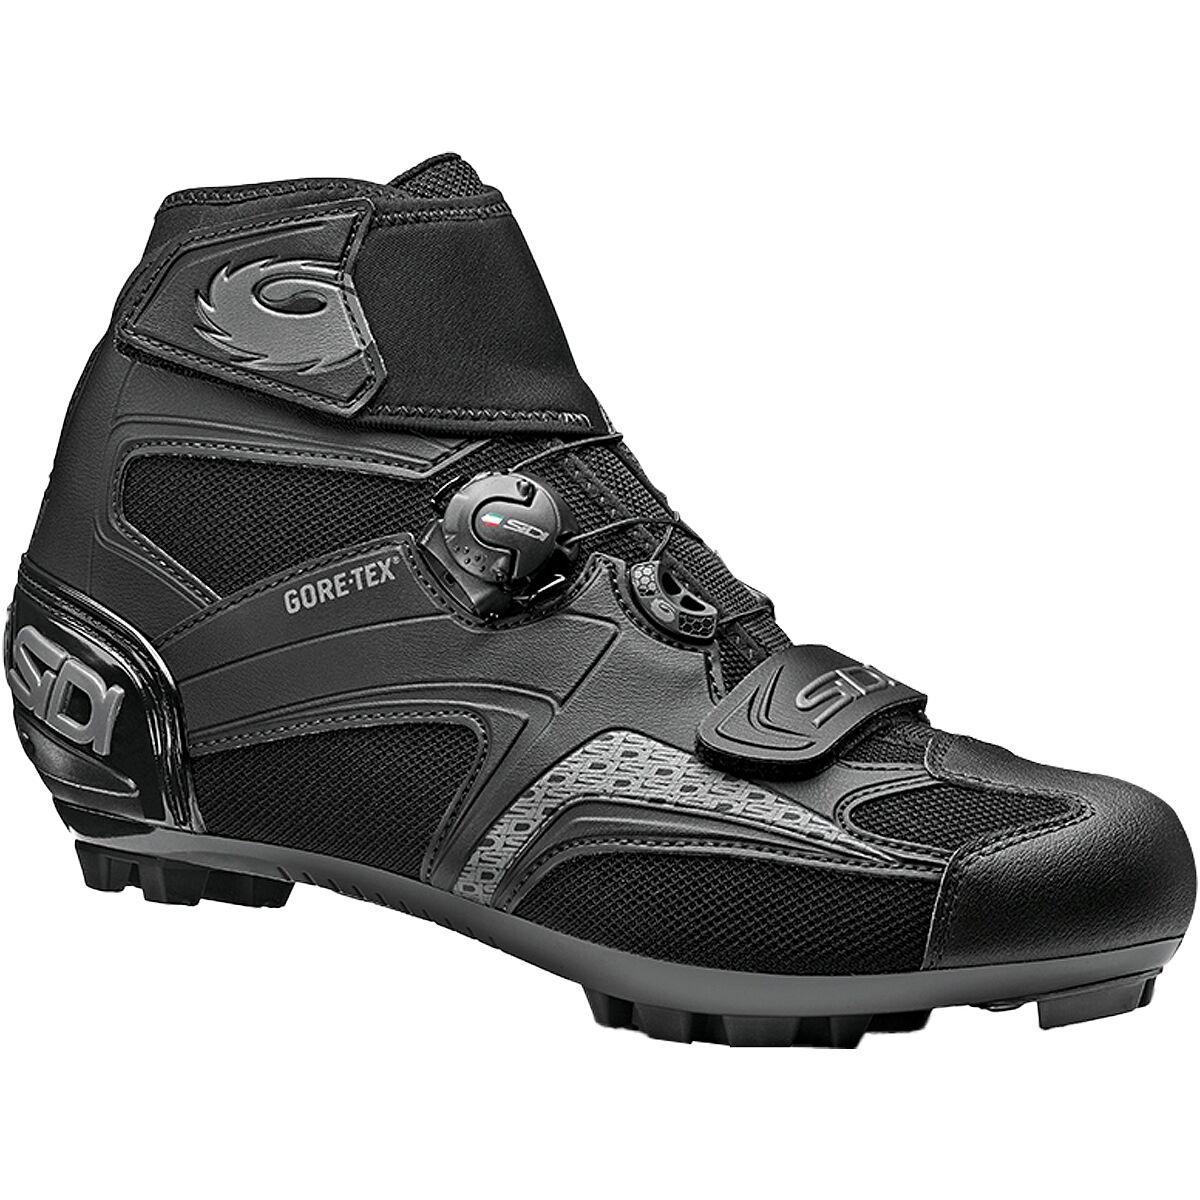 Sidi Frost GORE-TEX 2 Cycling Shoe - Men's Black/Black, 49.0